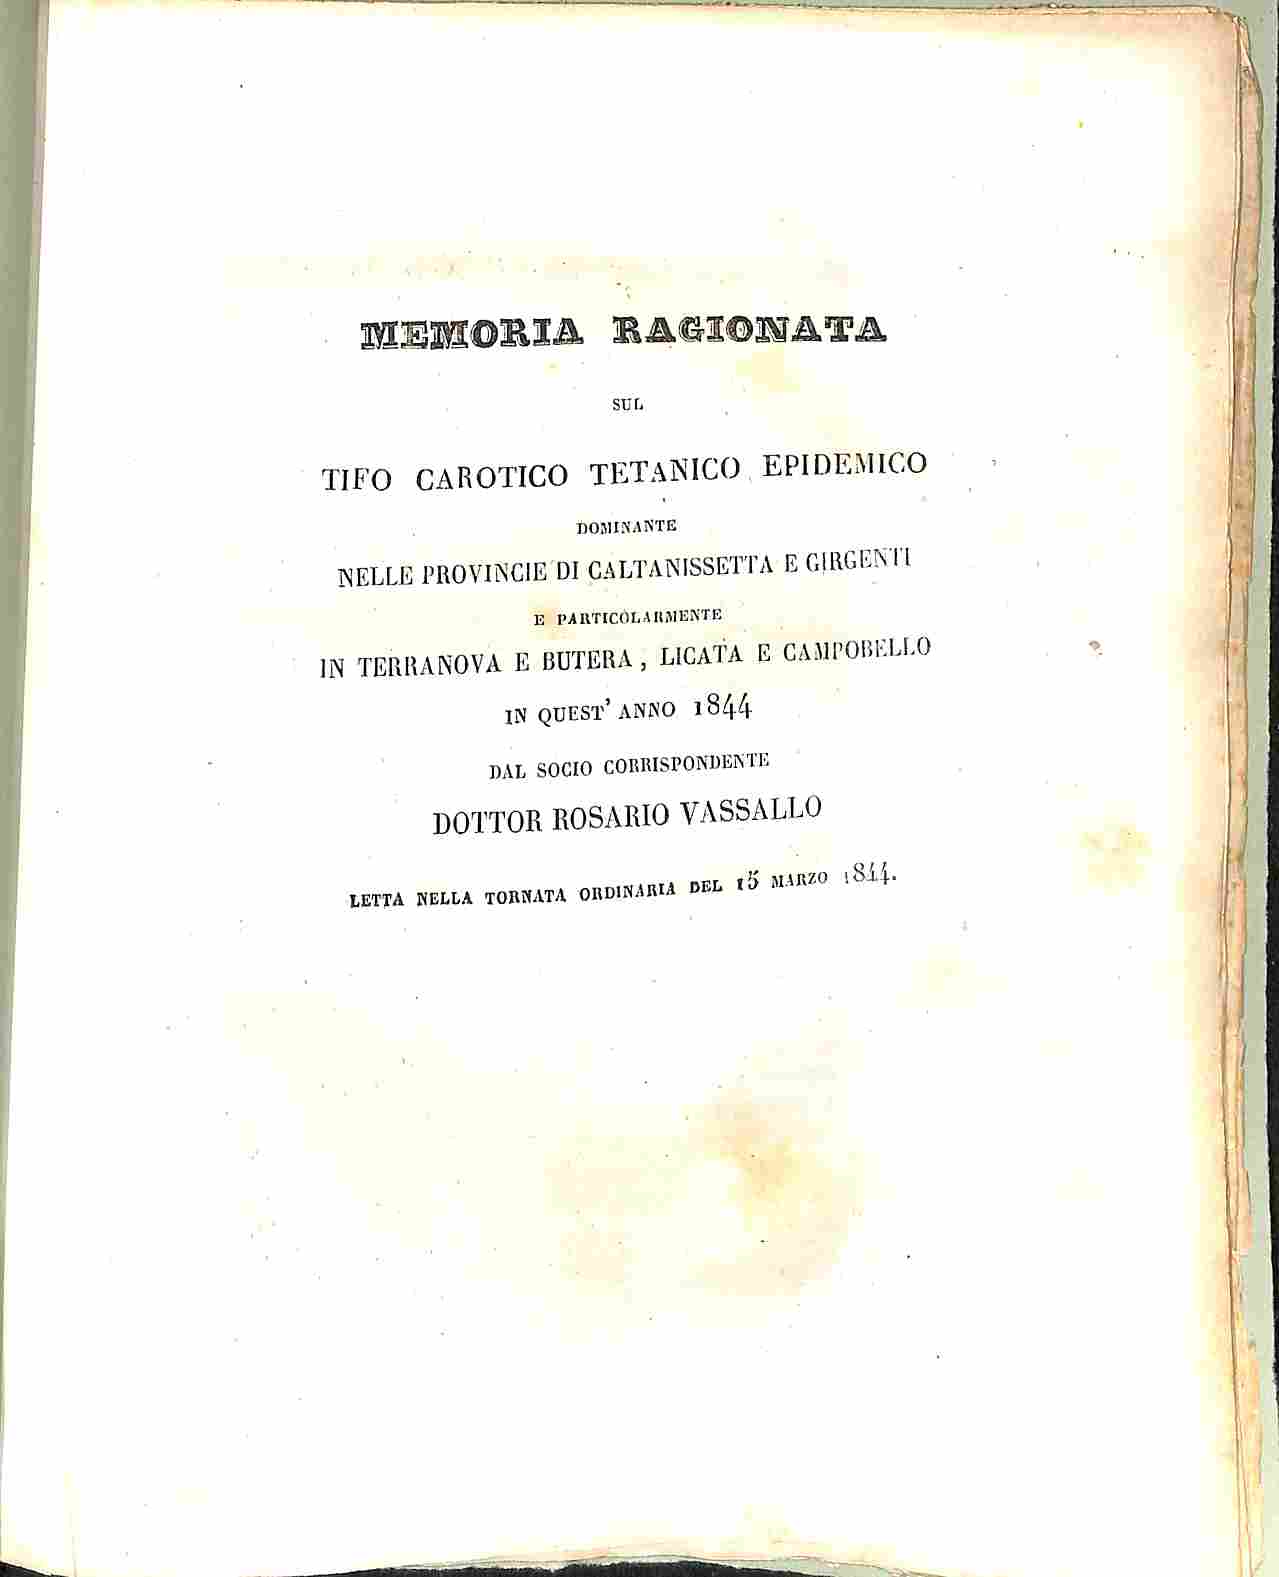 Memoria ragionata sul tifo carotico tetanico epidemico dominante nelle provincie di caltanissetta e Girgenti e particolarmente in Terranova e Butera, Licata e Campobello in quest'anno 1844